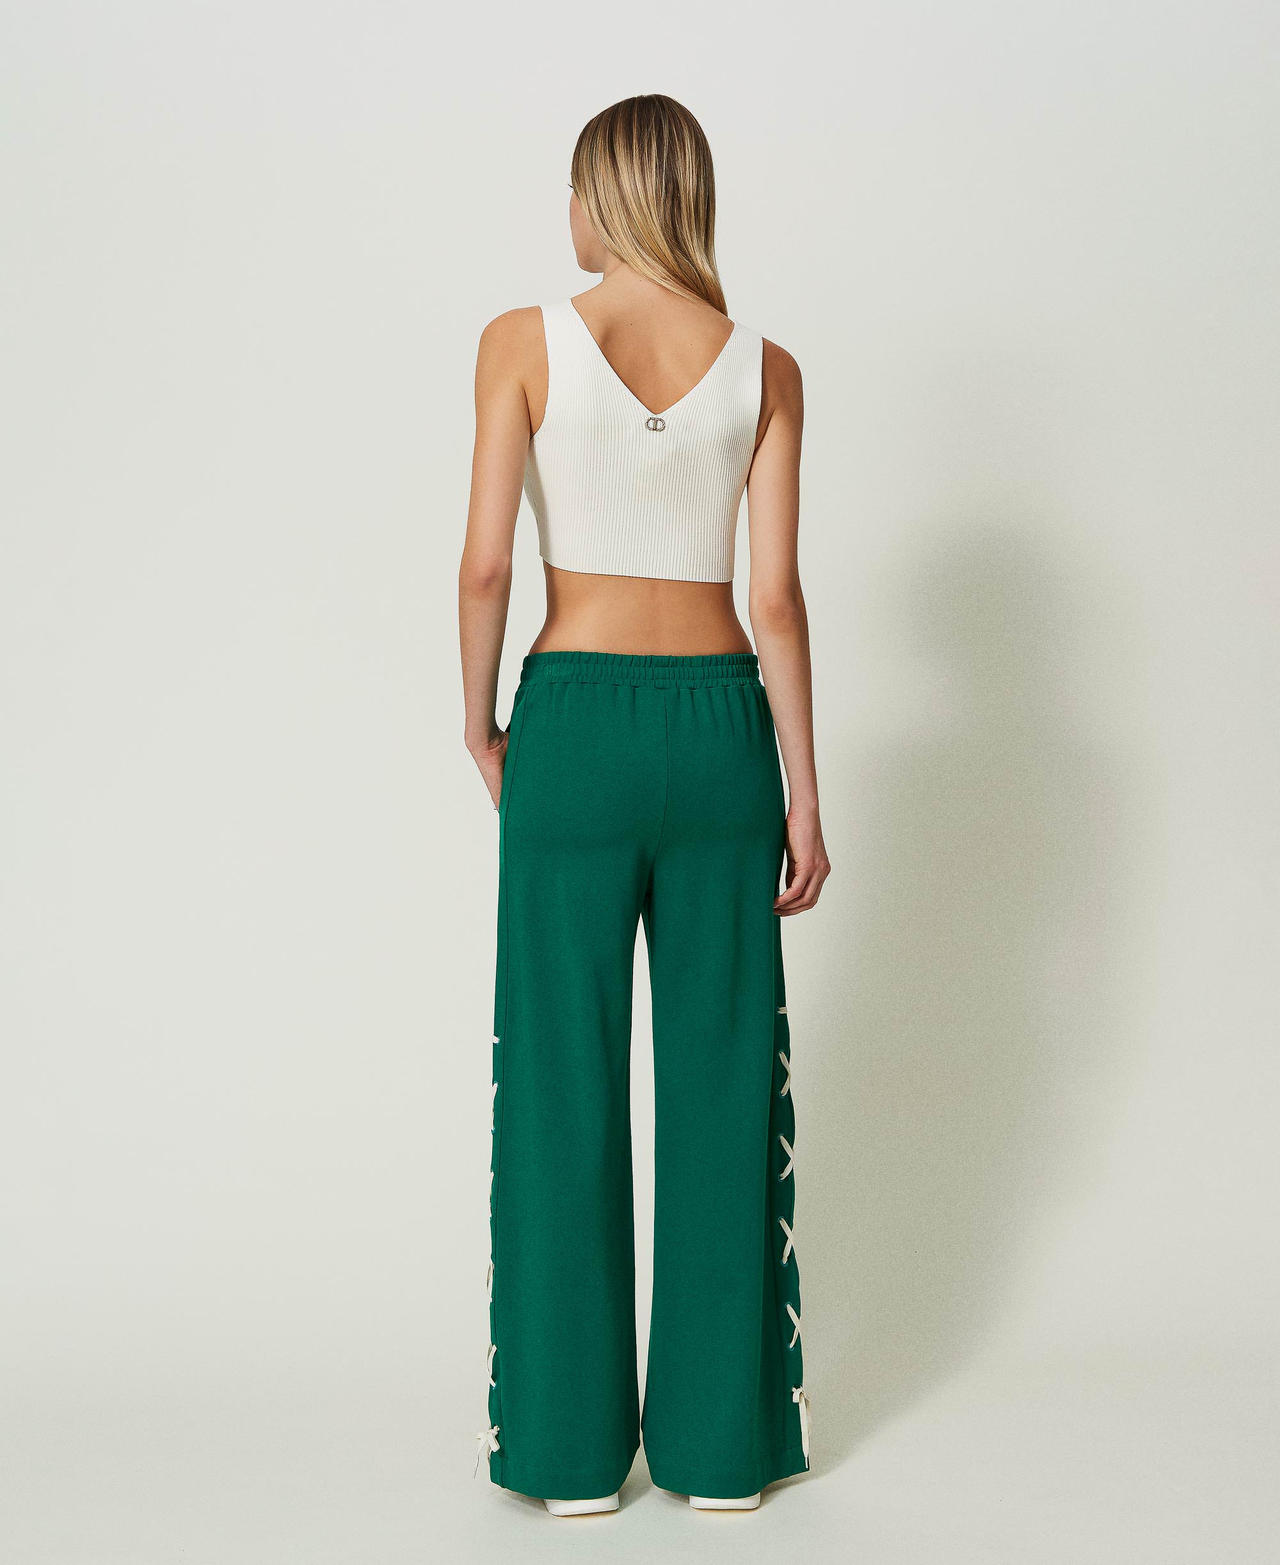 Pantalon palazzo avec fentes Vert « Alpine Green » Femme 241LL2MBB-03